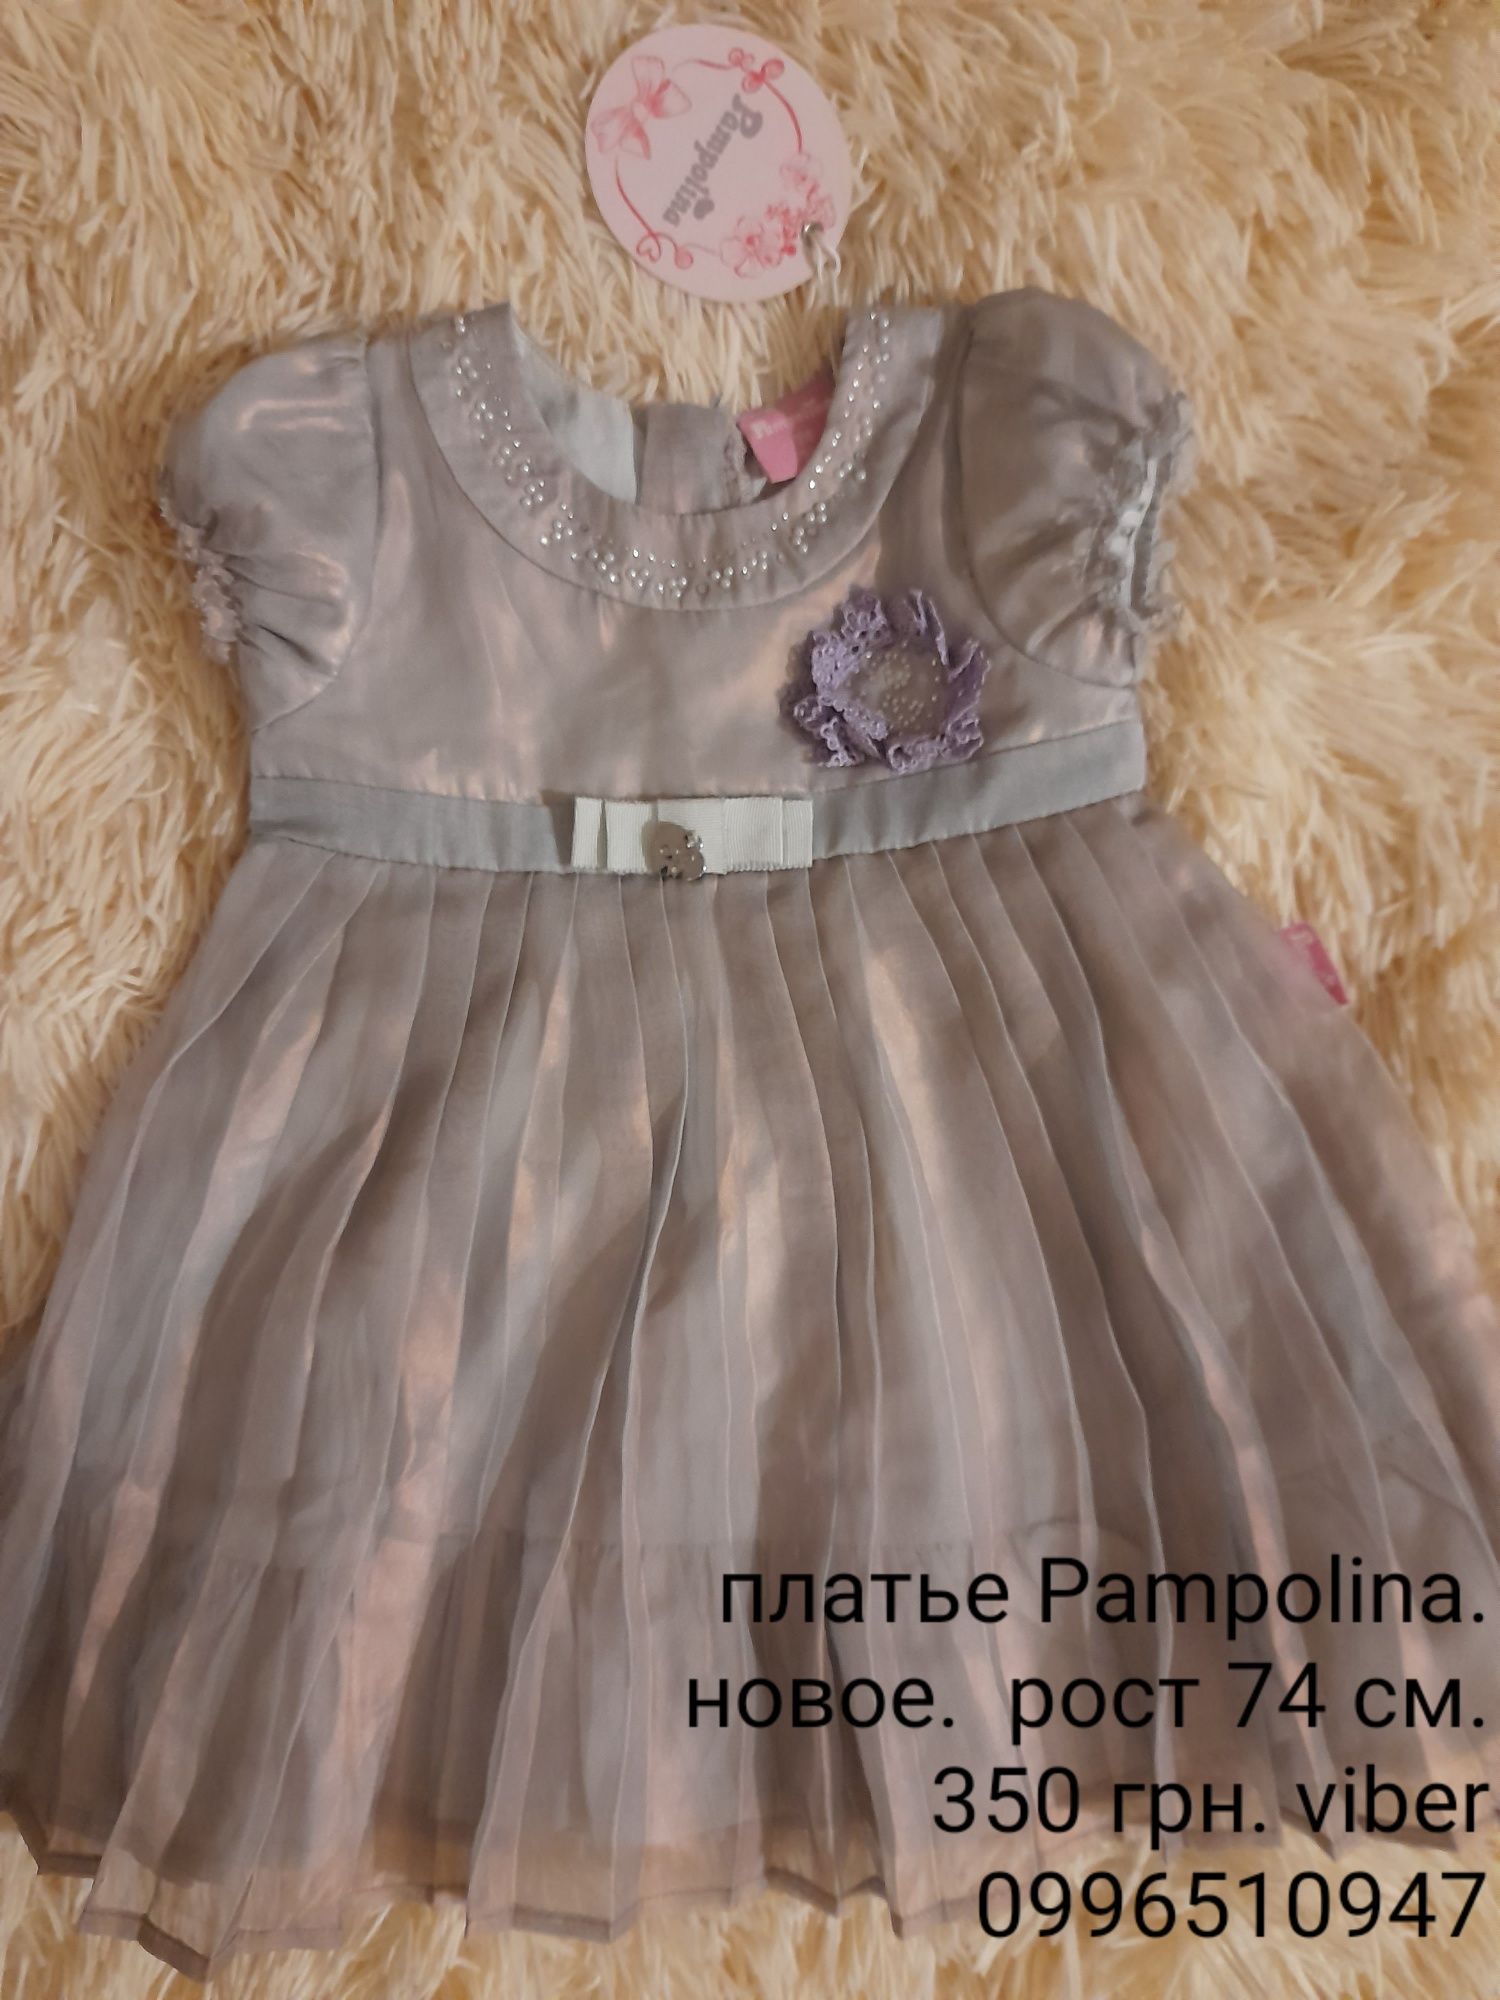 Платье pampolina